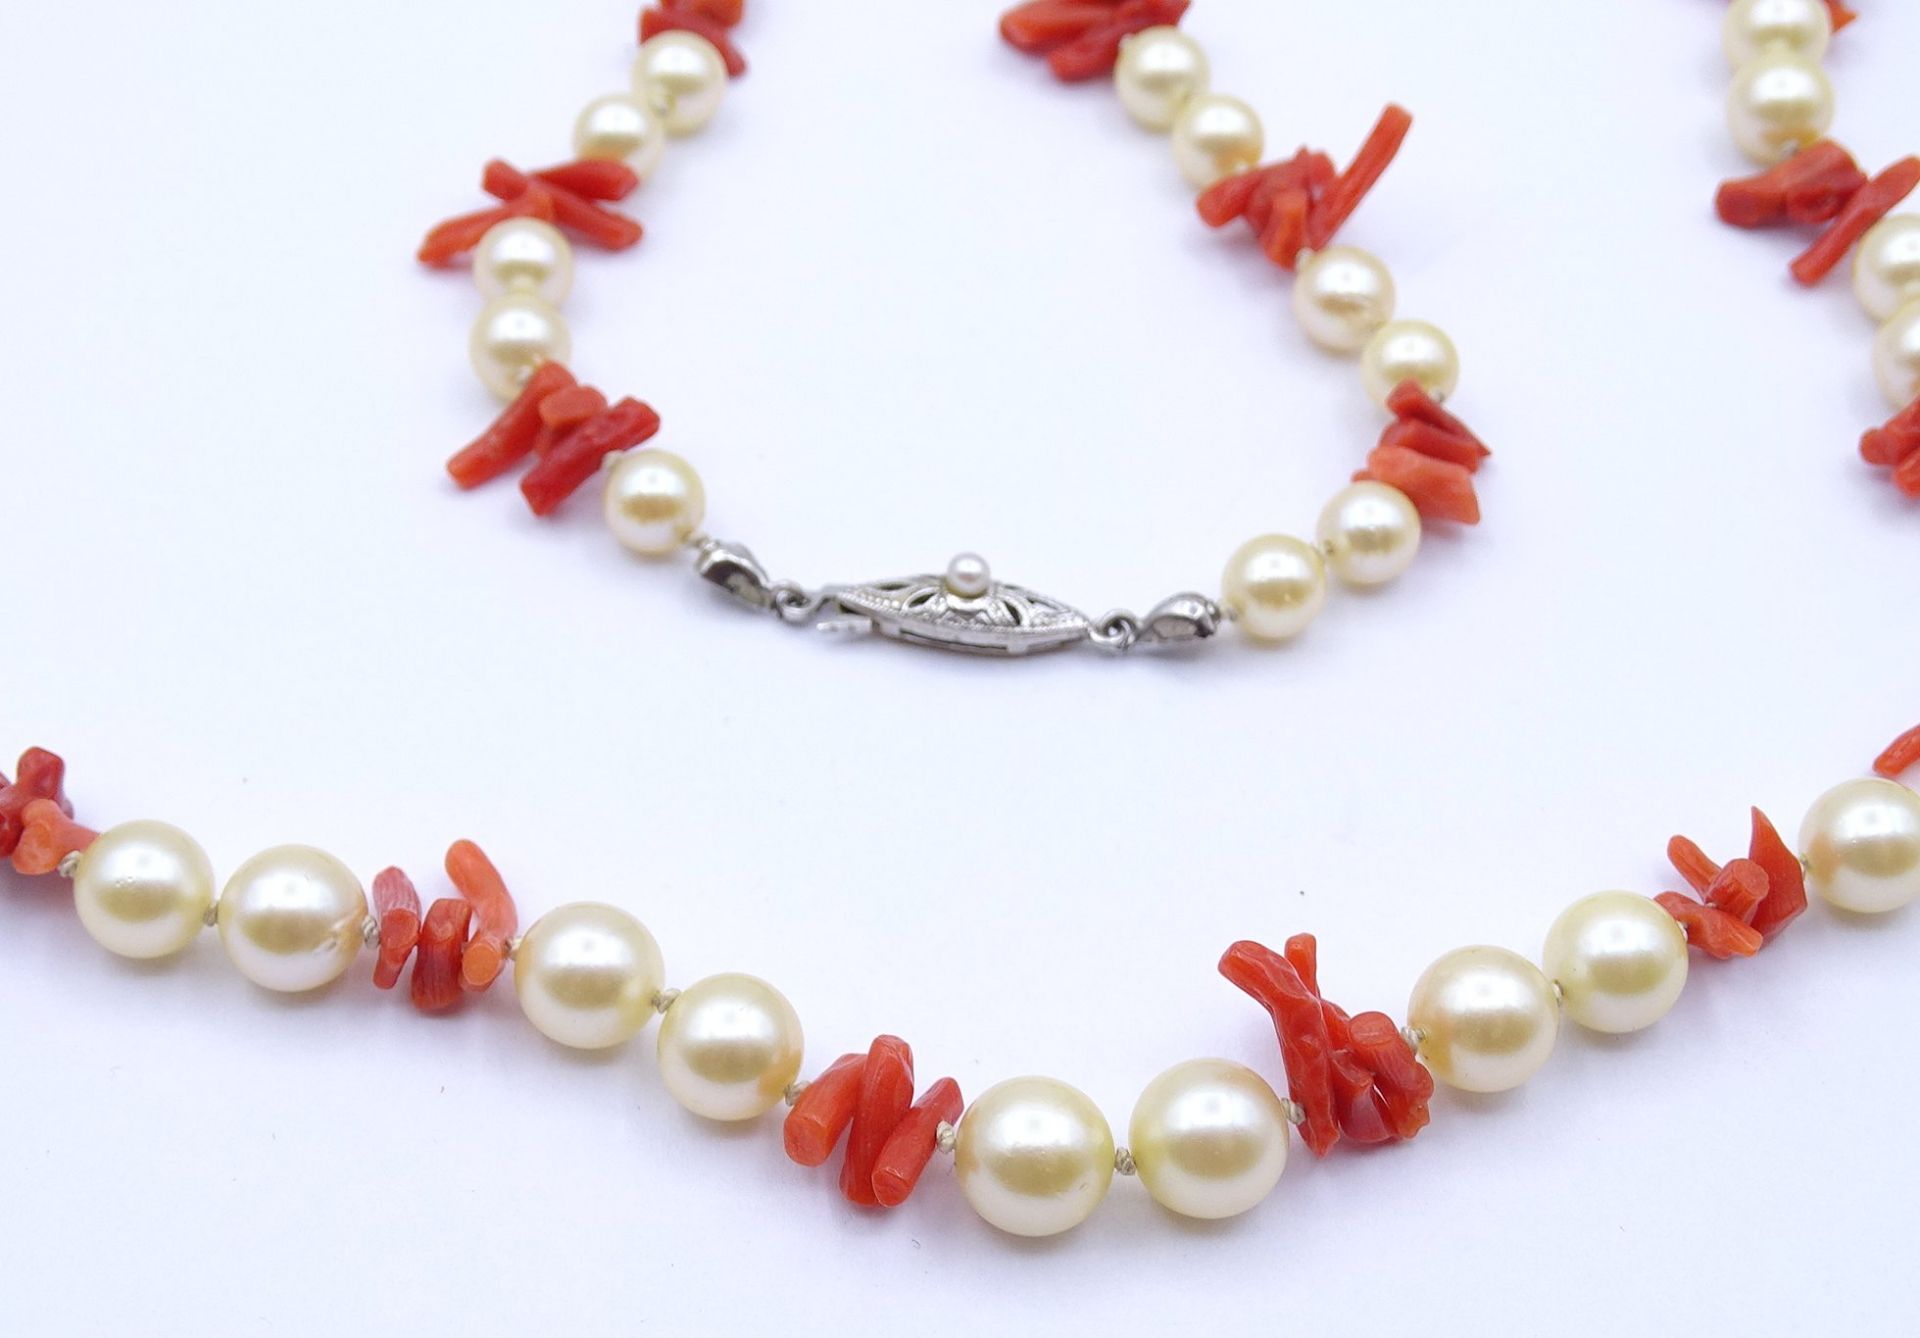 Halskette mit Perlen und Korallenstäbe, Bicolor Goldverschluss GG/WG 0.585, L. 80cm, 42,8g. - Image 3 of 4